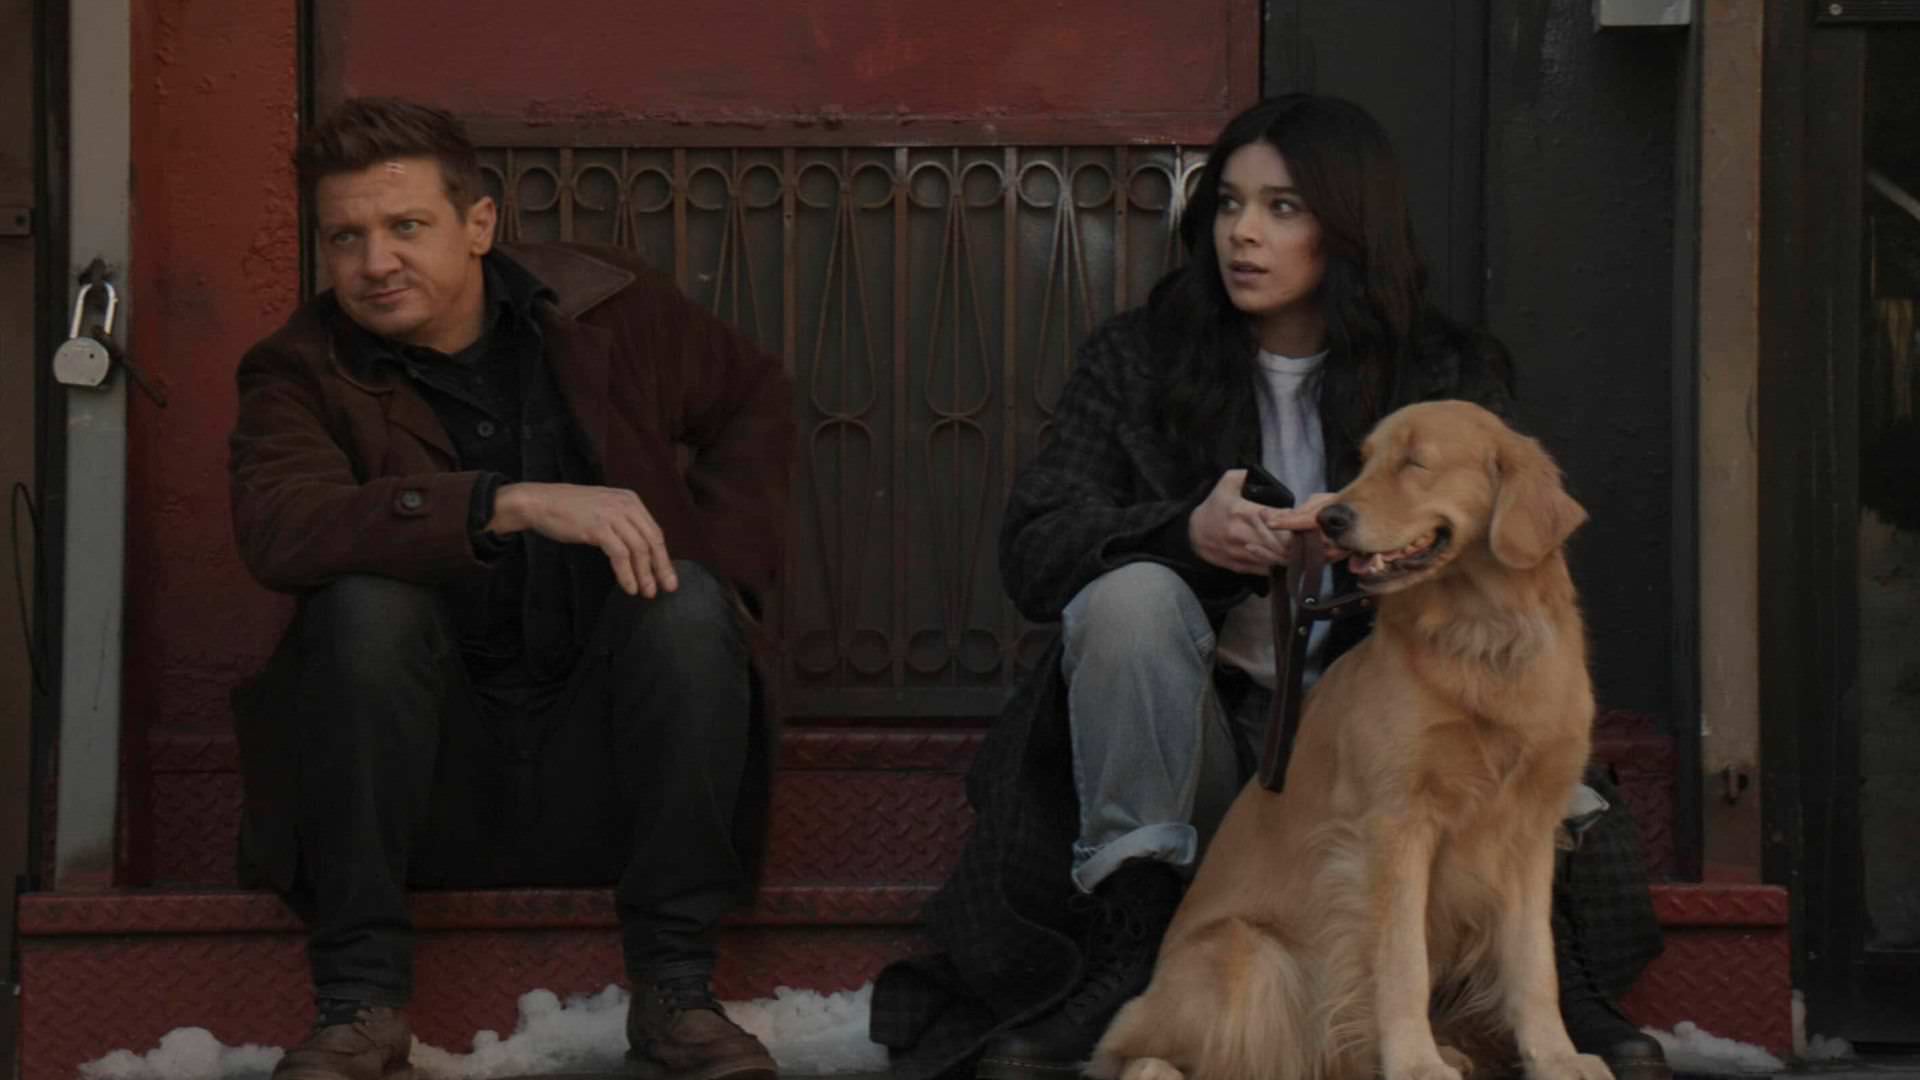 جرمی رنر در نقش کلینت بارتون و هیلی استاینفلد در نقش کیت بیشاپ به همراه سگ لاکی پیتزا در قسمت سوم سریال Hawkeye